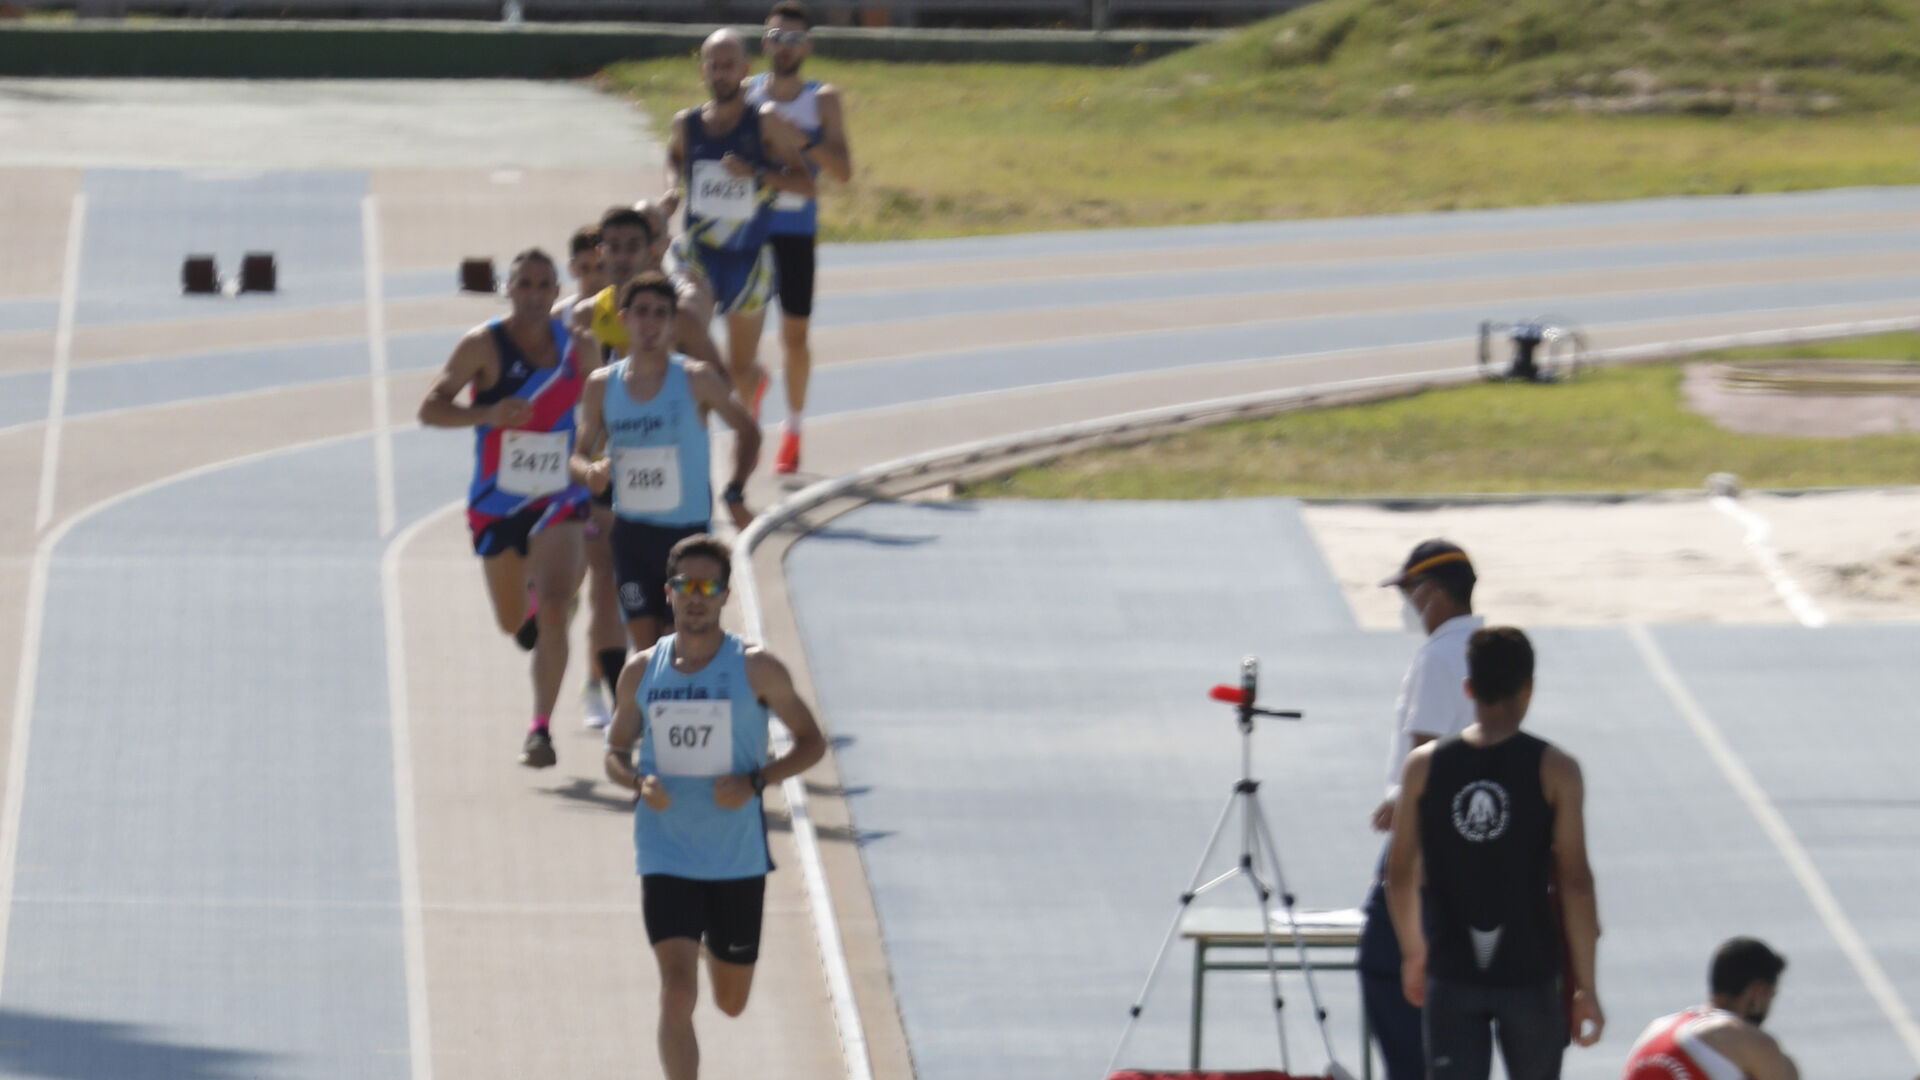 Las fotos de atletismo en las pistas del Enrique Talavera